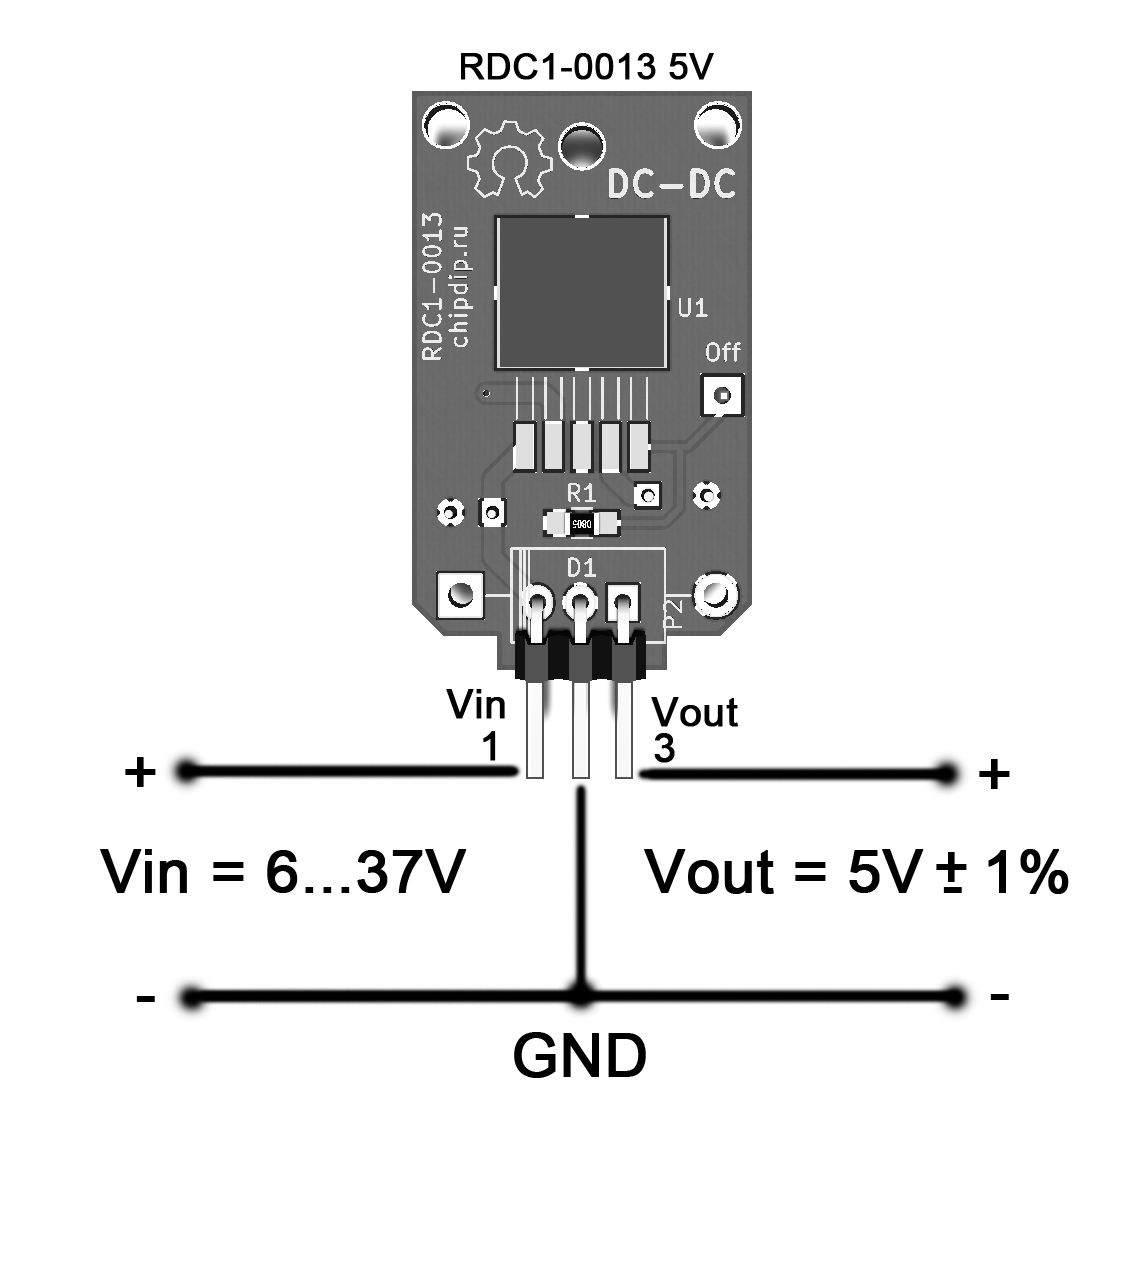 Схема підключення RDC1-0013 12V